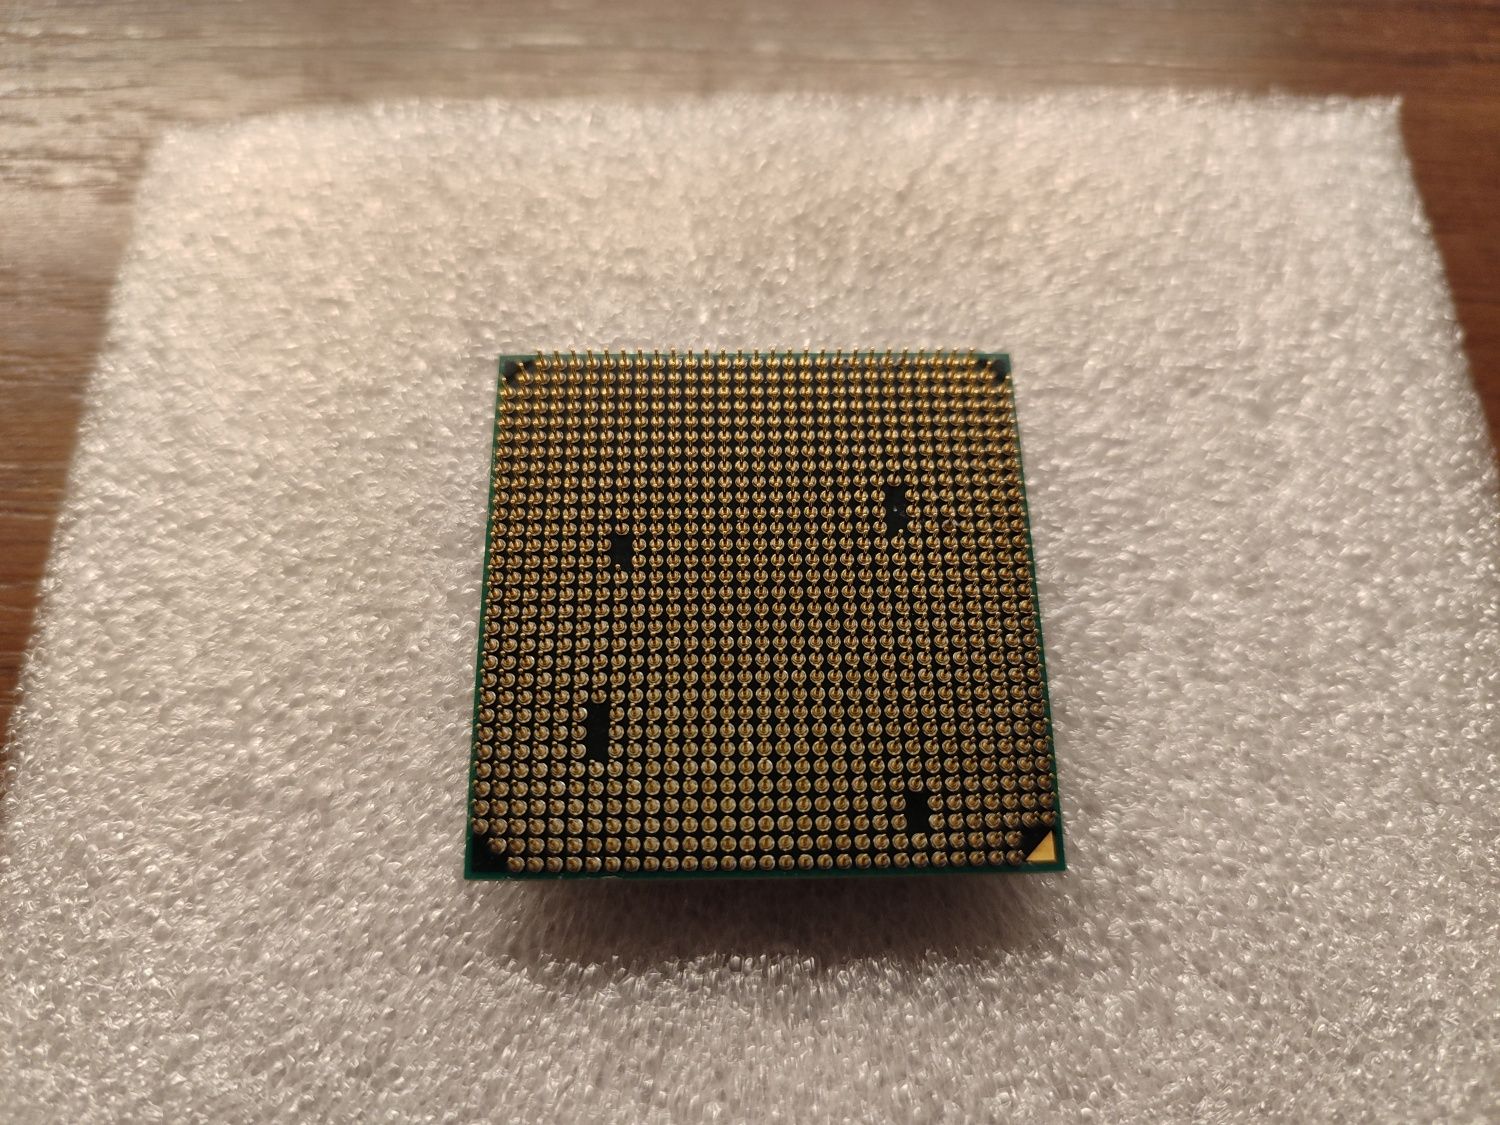 Procesor AMD Phenom II x6 1075T # jak nowy # 3GHz 3,5Ghz Turbo